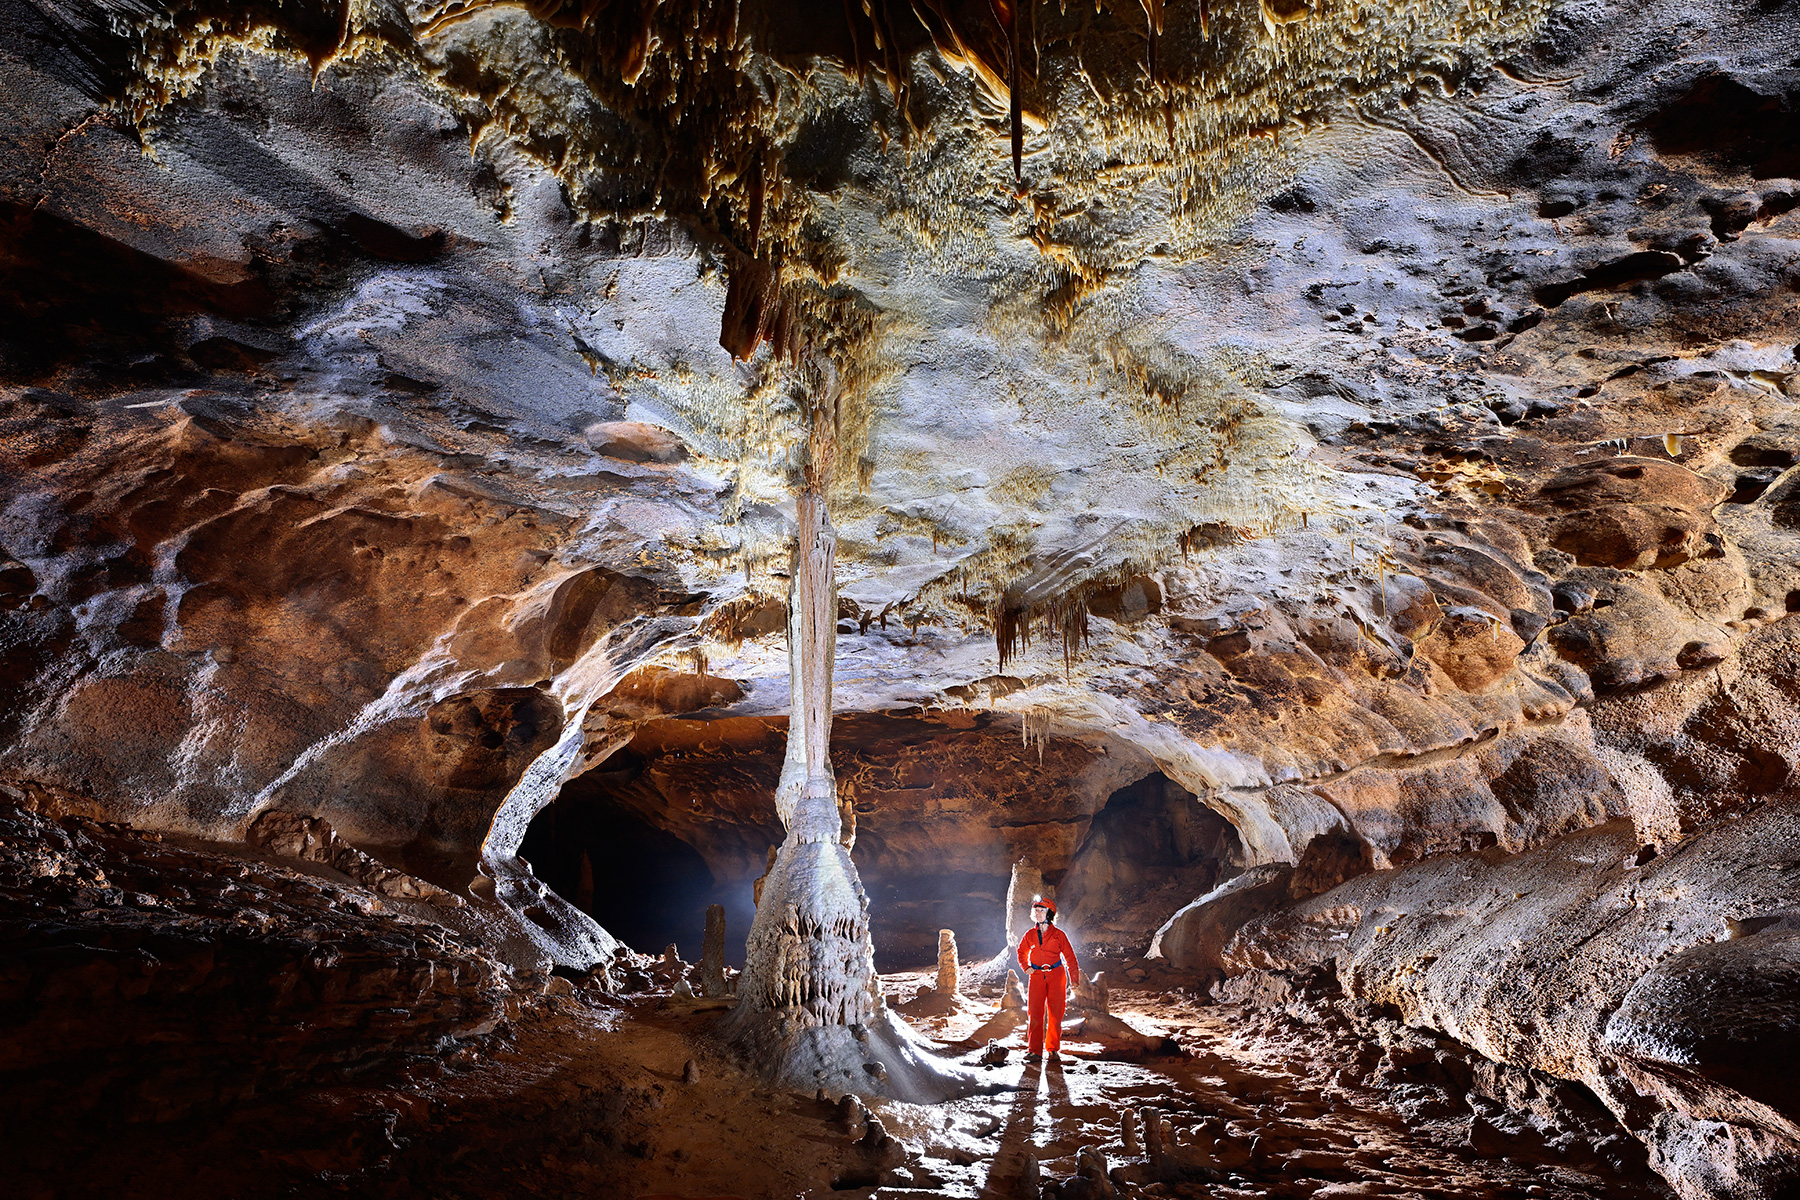 Grotte de Saint-Marcel d'Ardèche (réseau I) - Colonne blanche au milieu d'une galerie colorée